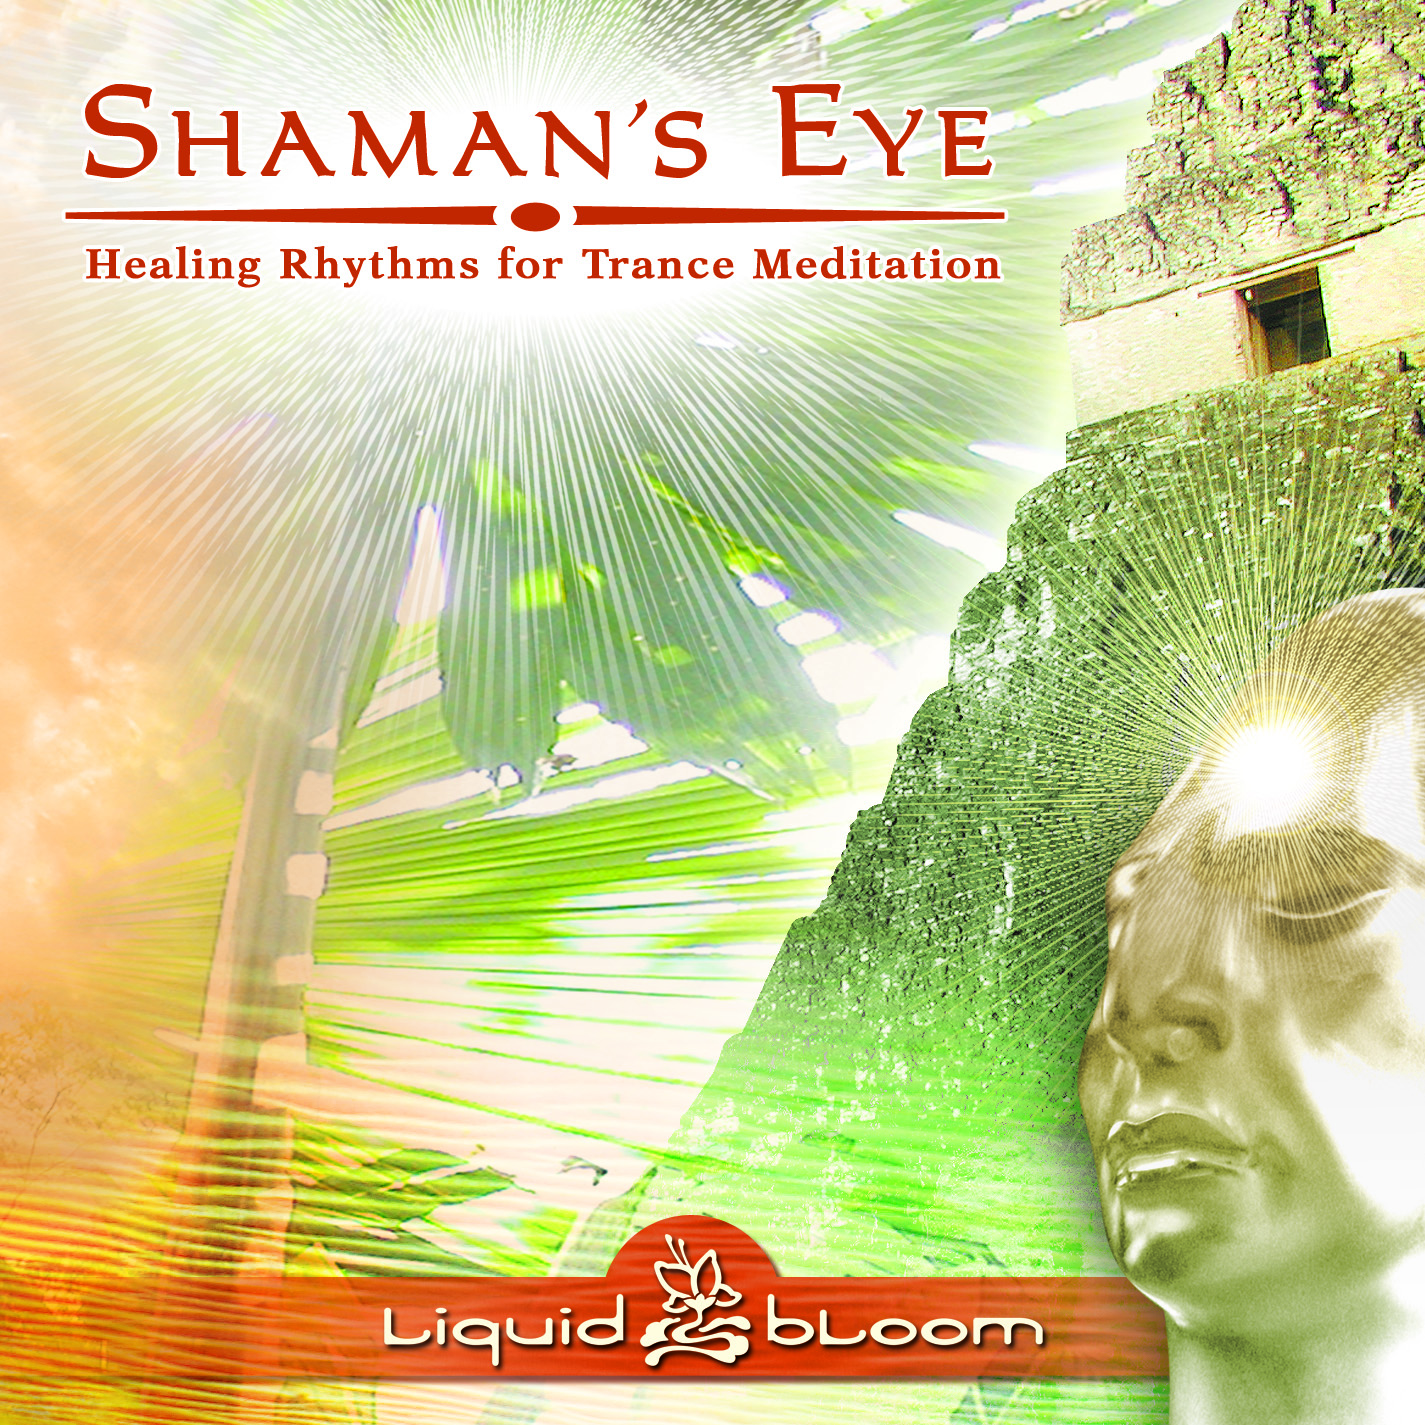 Shaman's Eye